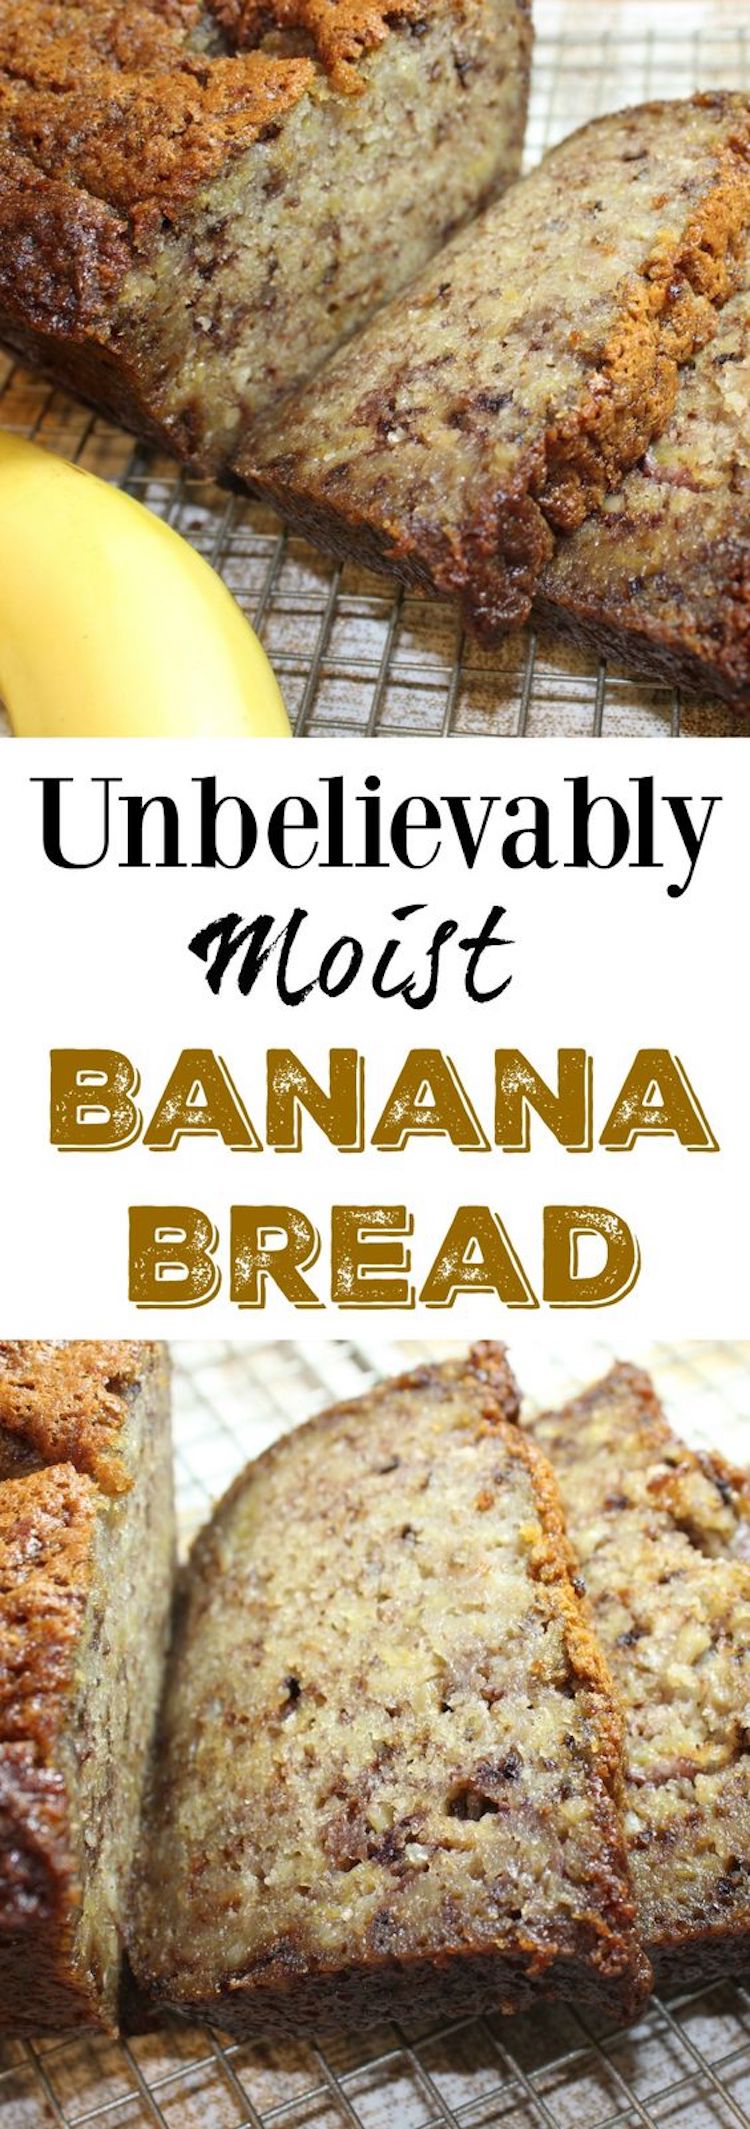 Banana Bread Recipe 09